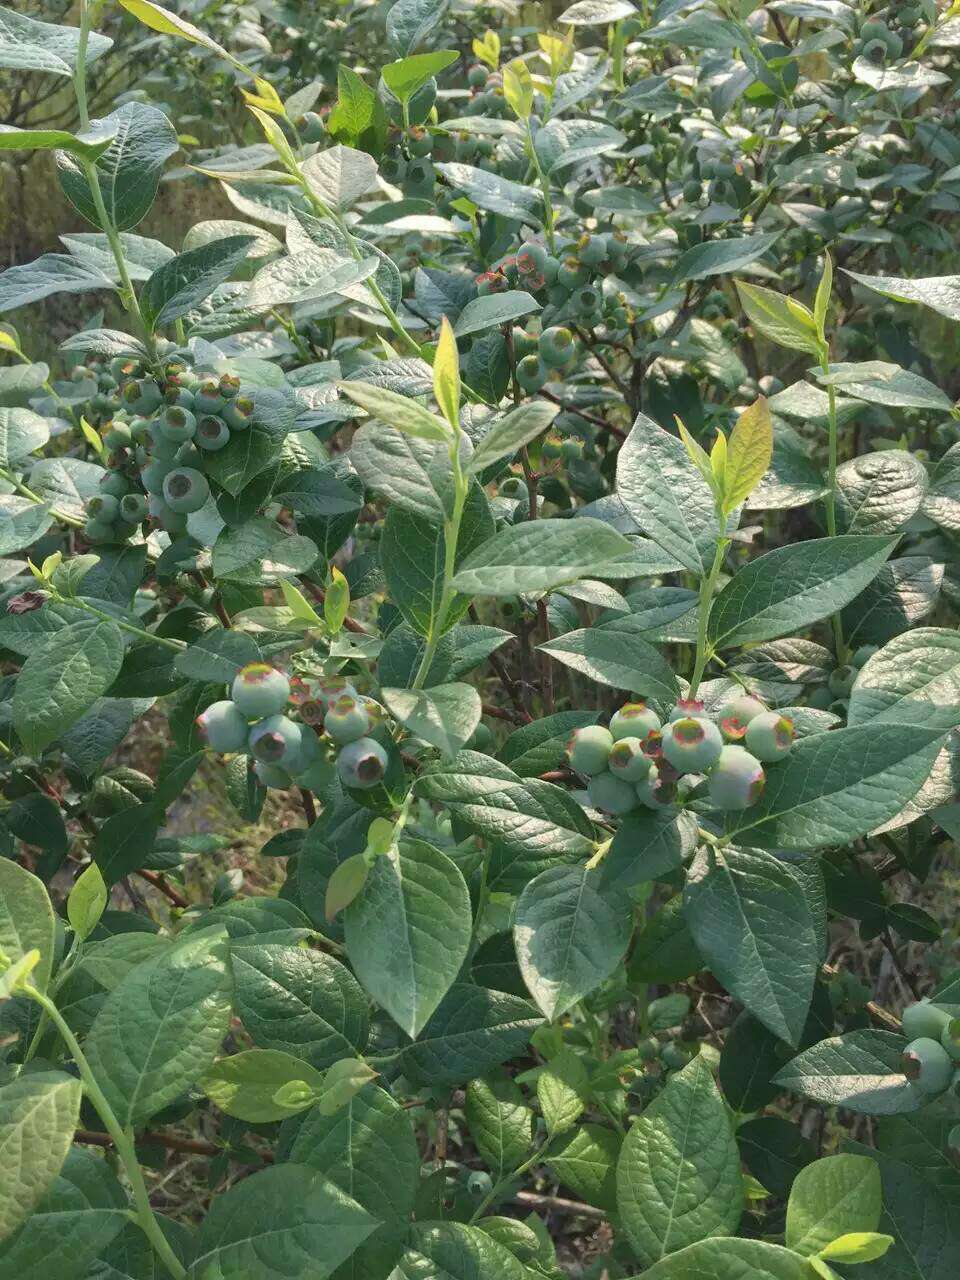 脱毒苏斯蓝蓝莓苗真实报价苗木粗壮的苏斯蓝蓝莓苗